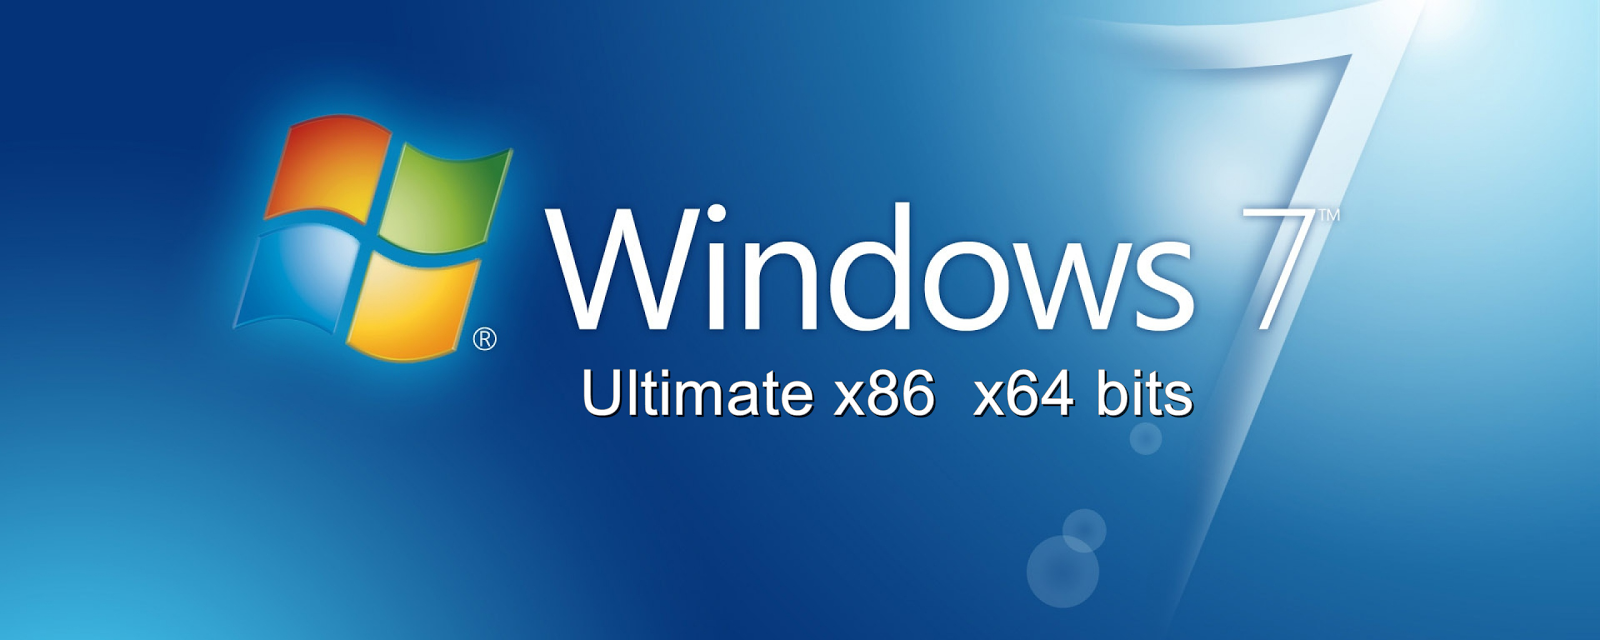 windows 7 ultimate iso 32 bit indir